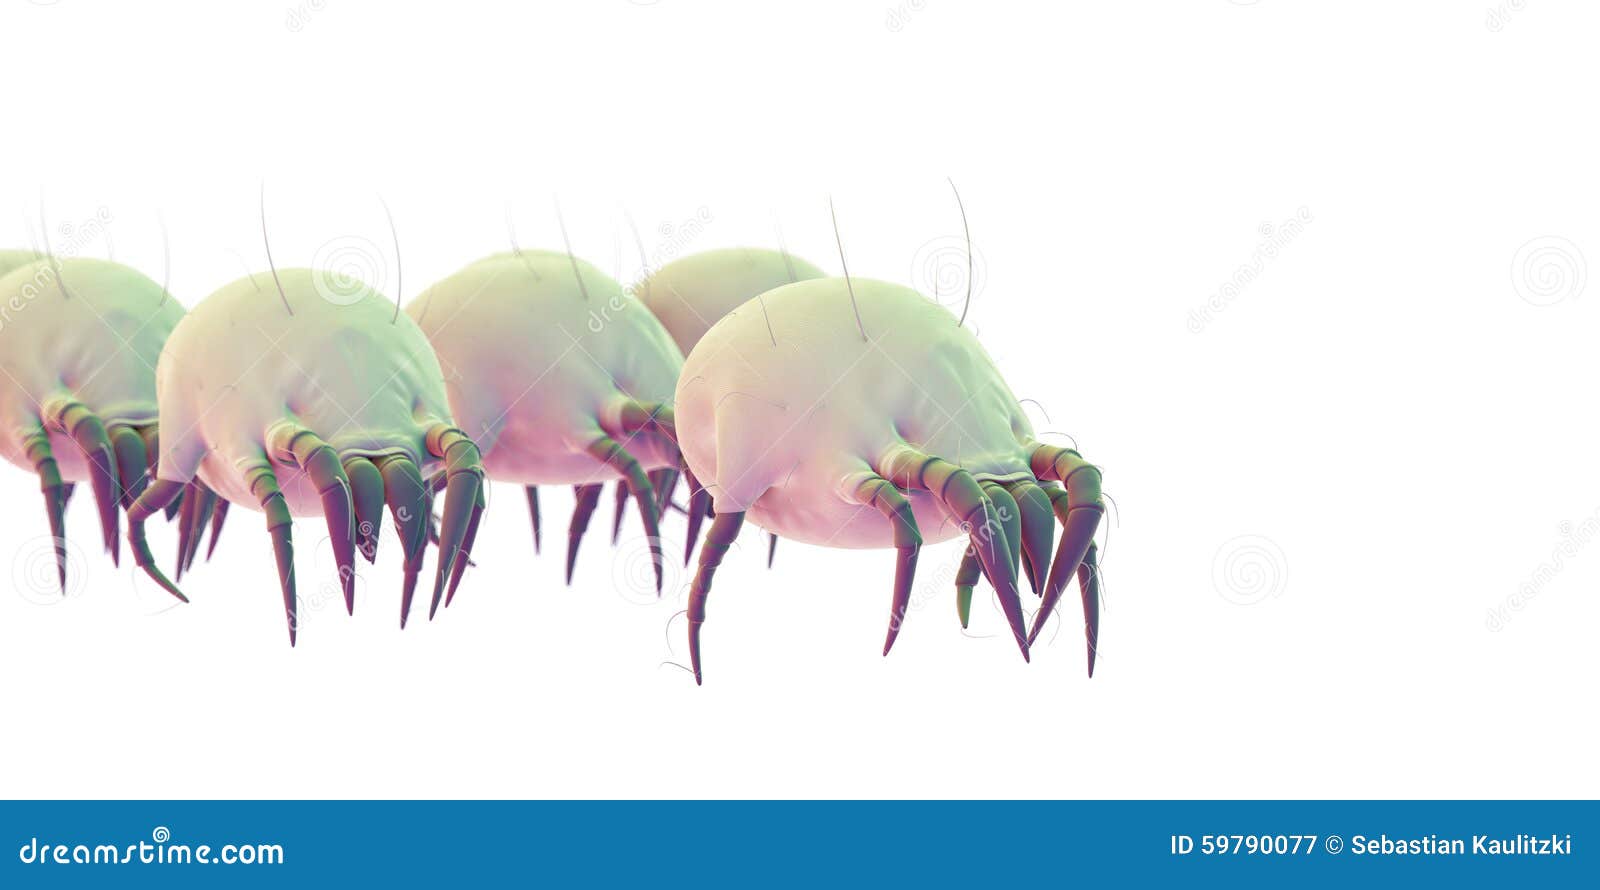 some common dust mites